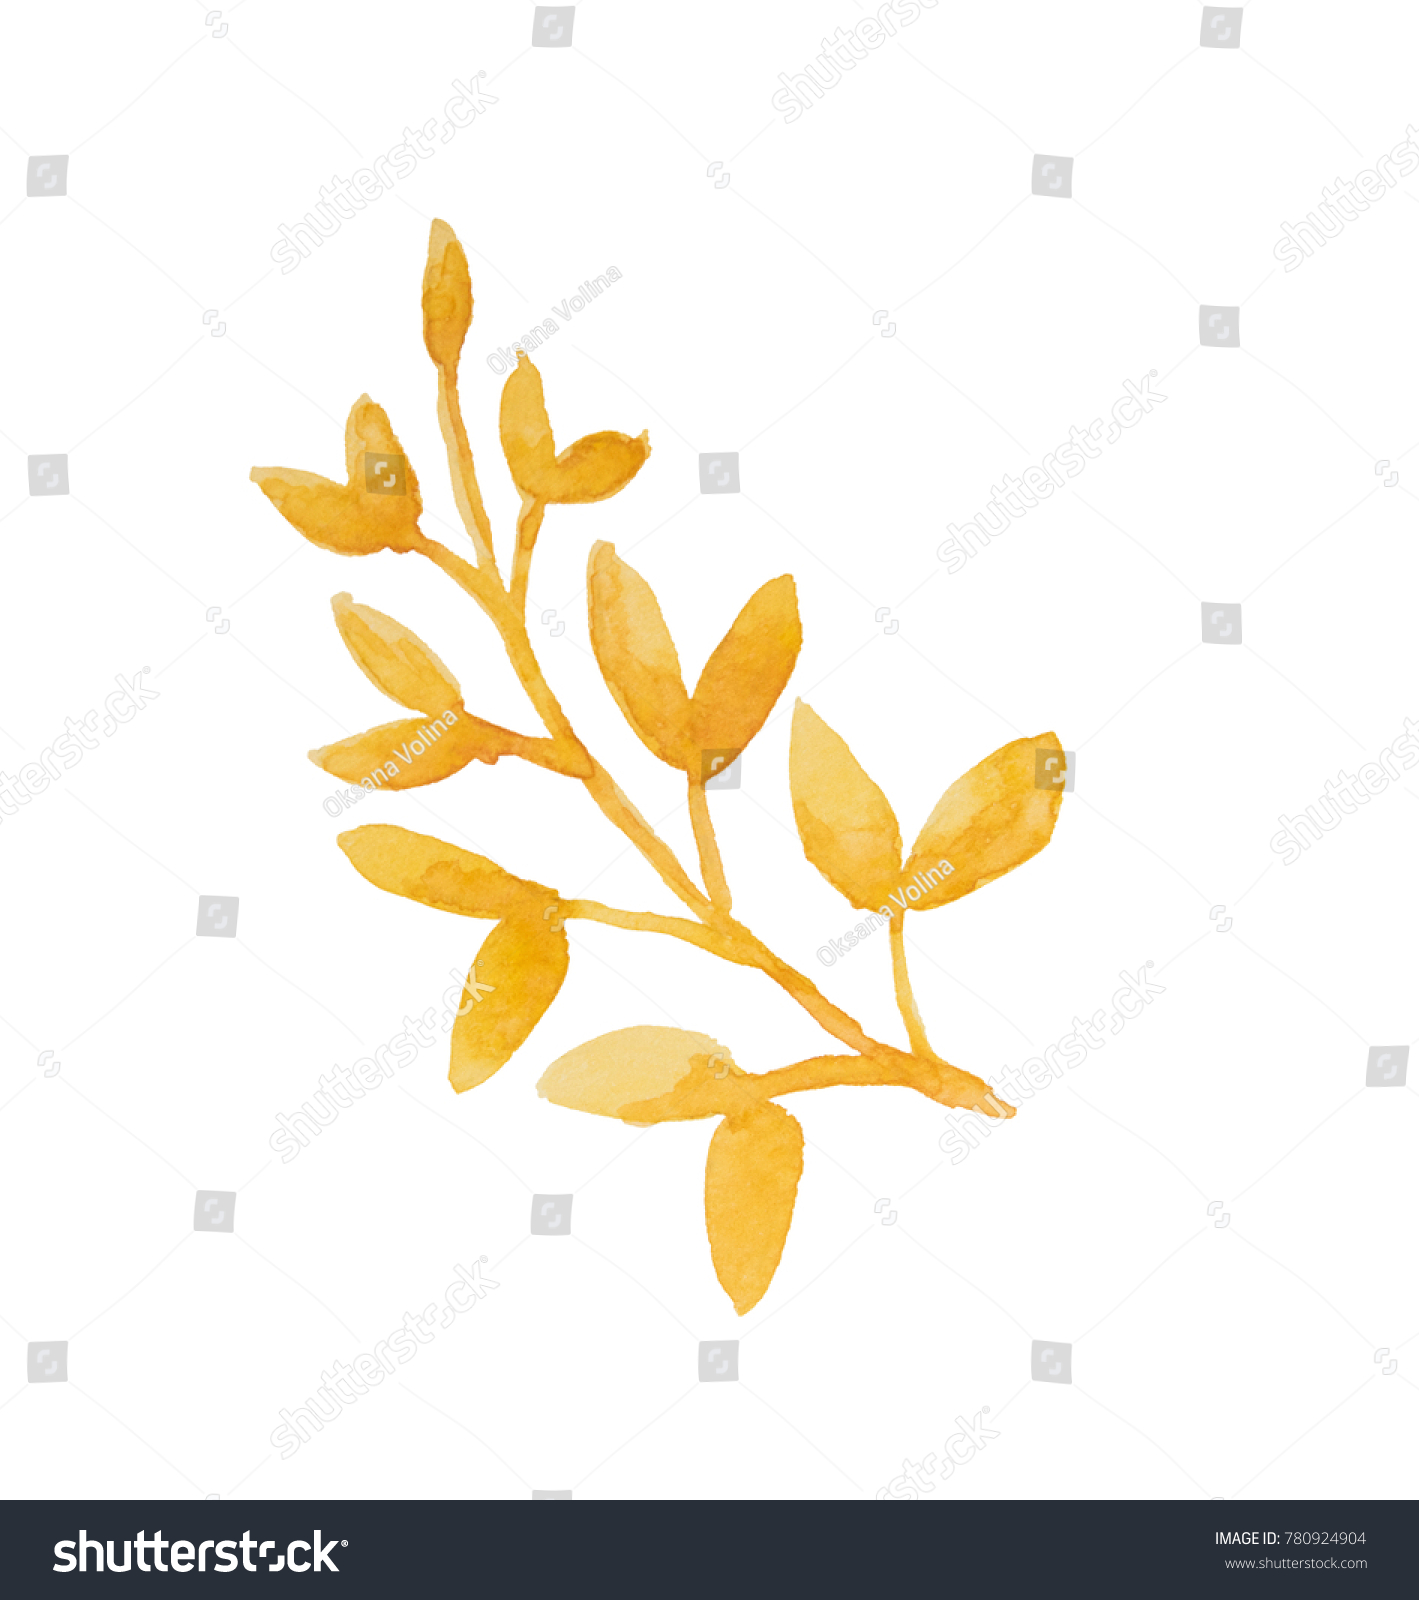 Beautiful Abstract Autumn Orange Yellow Leaf Stock Illustration ...